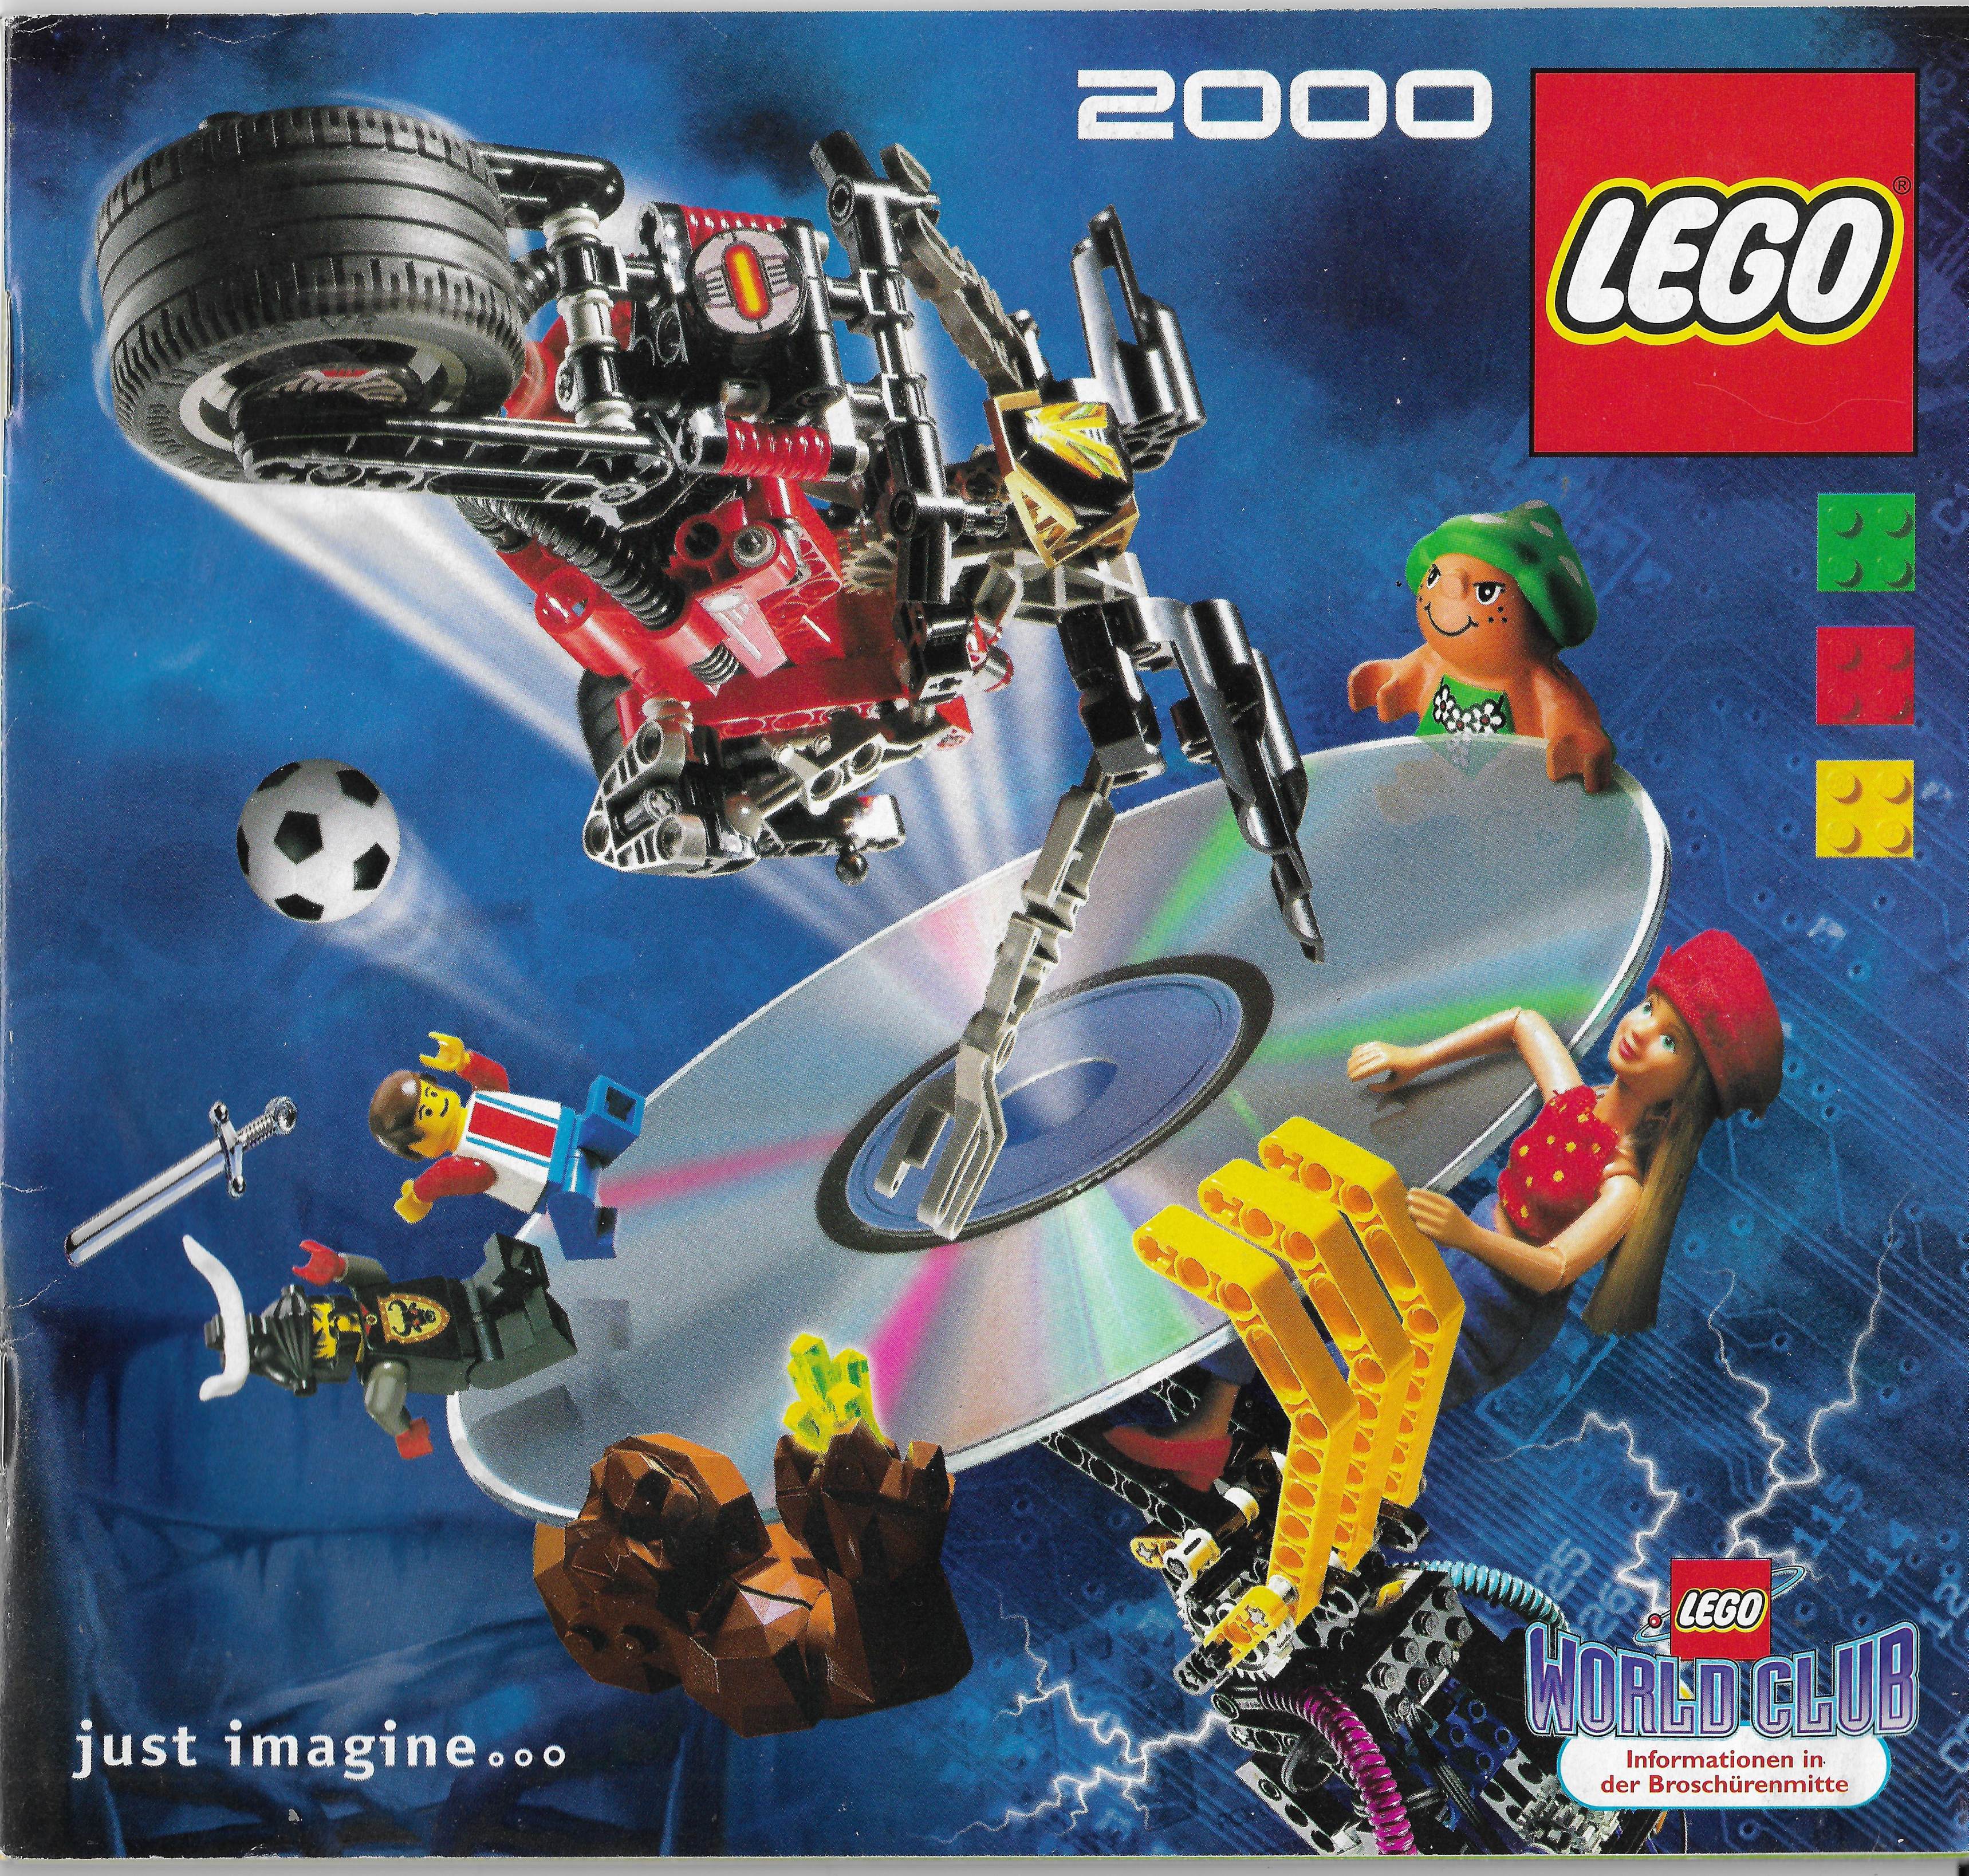 Német Lego katalógus 2000-ből